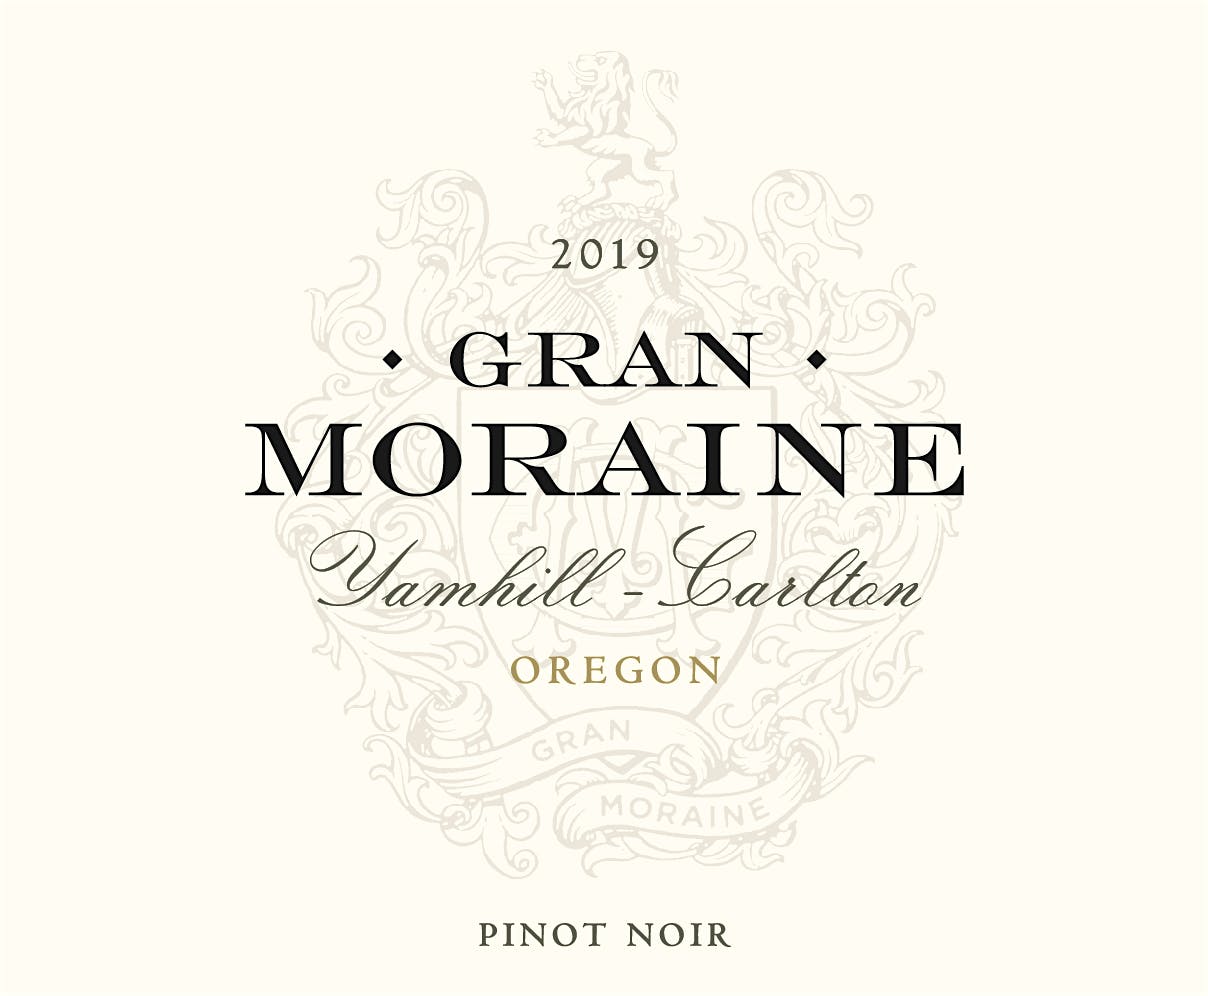 Label for Gran Moraine